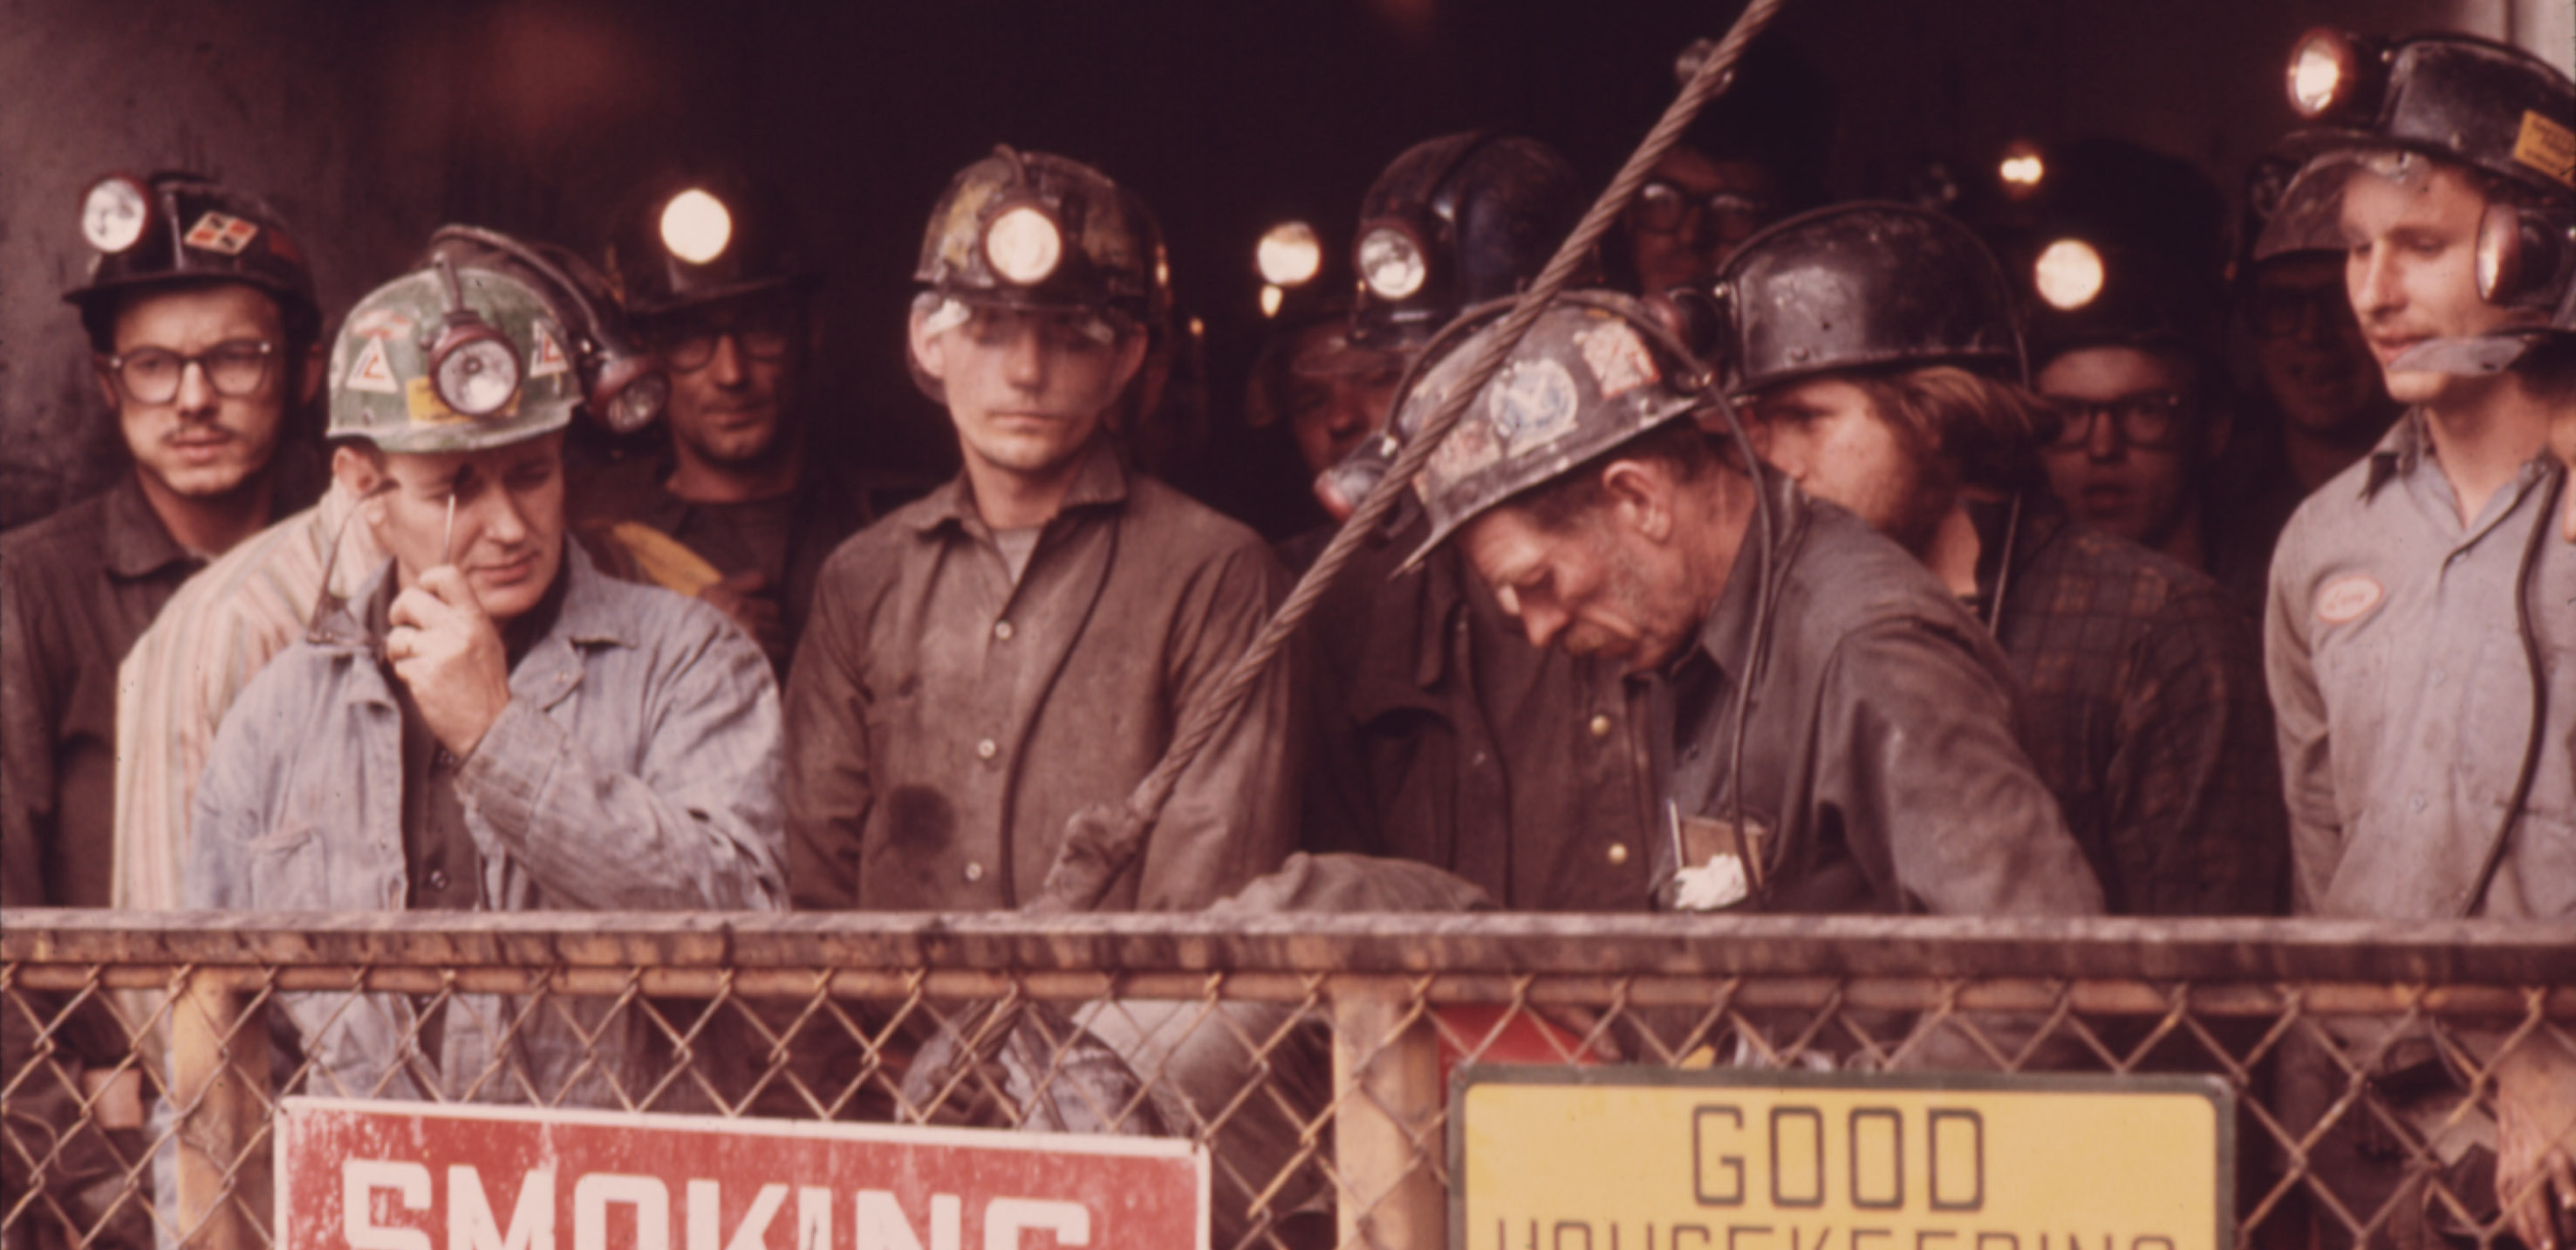 Culturando 360 - Texas Miners: A história marcada pelo racismo Voltamos  para 1966. Os Estados Unidos estão passando por seu período particular de  crise com a Guerra do Vietnã. Nas ruas, a